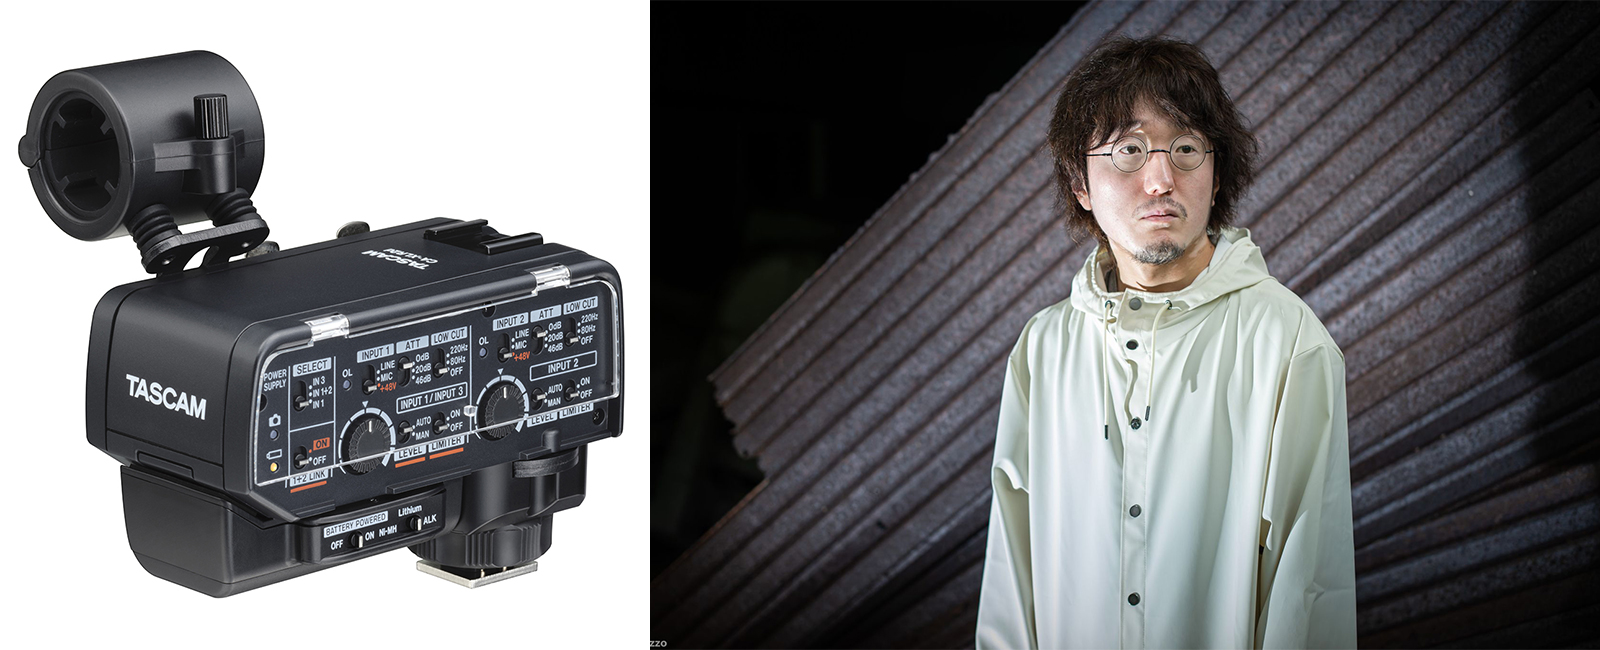 映画監督 太田信吾氏の考える現場での機材運用と軽量化。ミラーレスカメラ対応XLRマイクアダプター『CA-XLR2d』インタビュー。